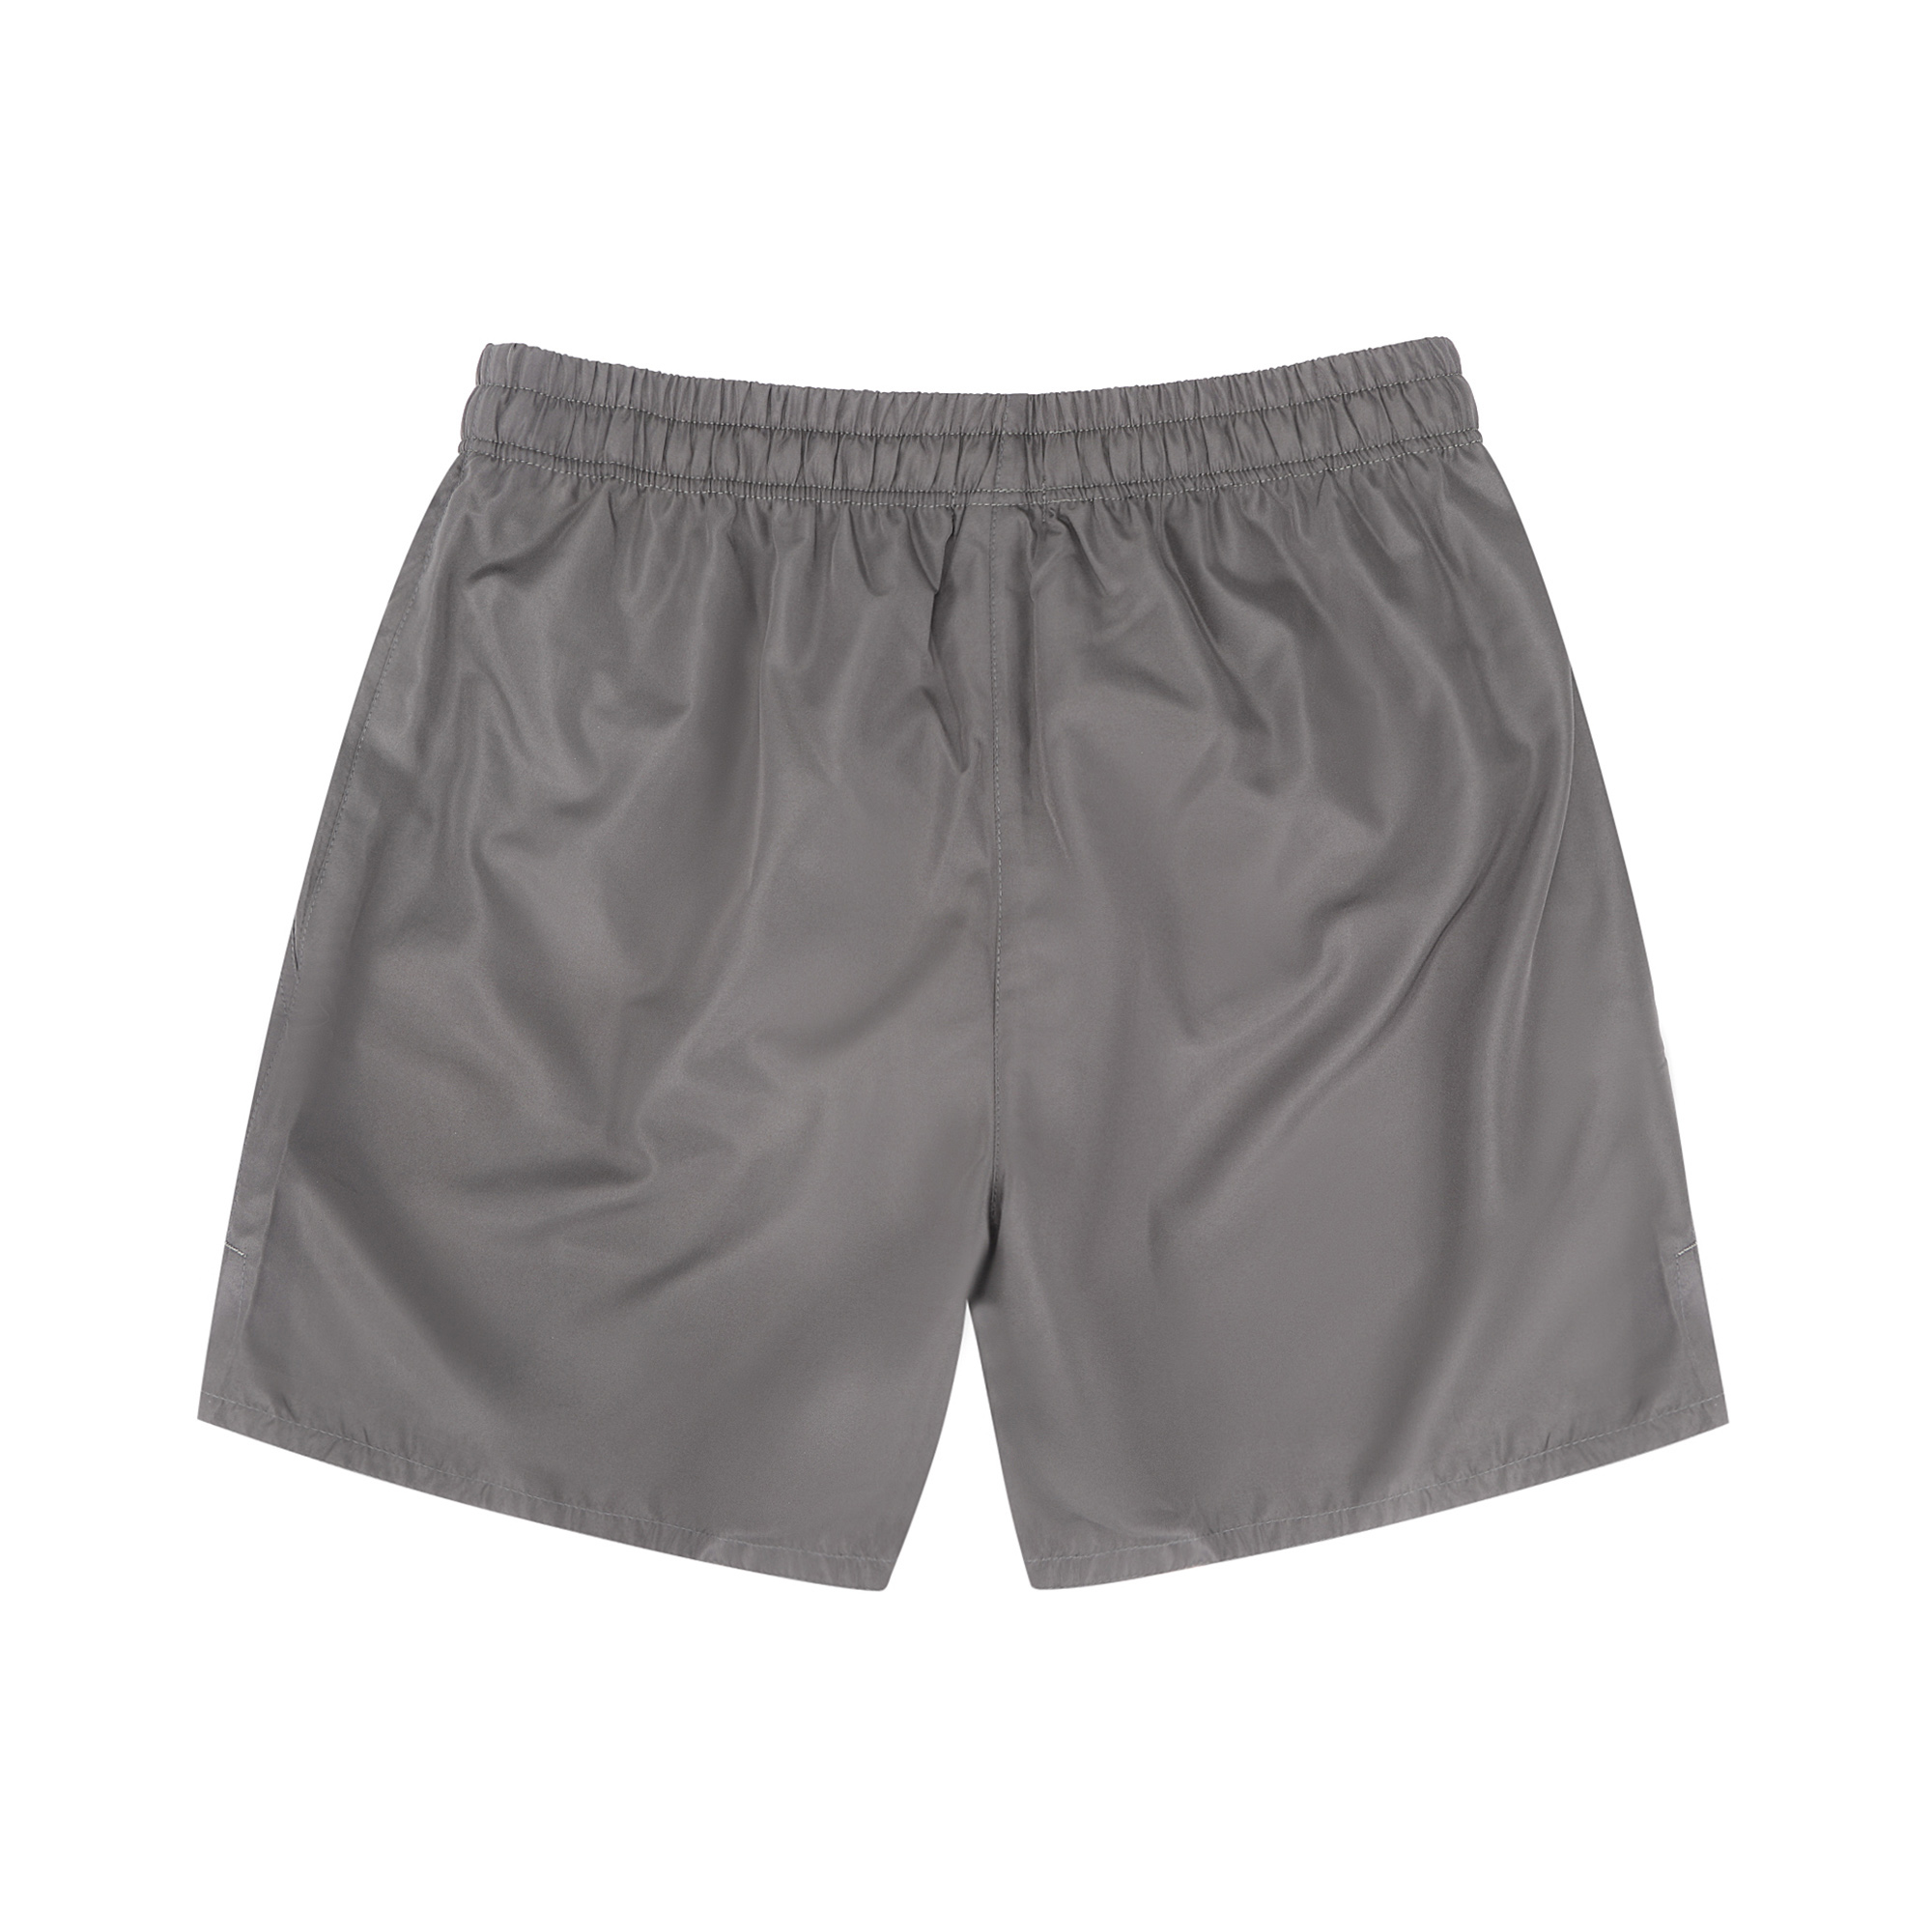 Мужские шорты пляжные Pantelemone PH-114 темно-серые 54, цвет темно-серый, размер 54 - фото 2